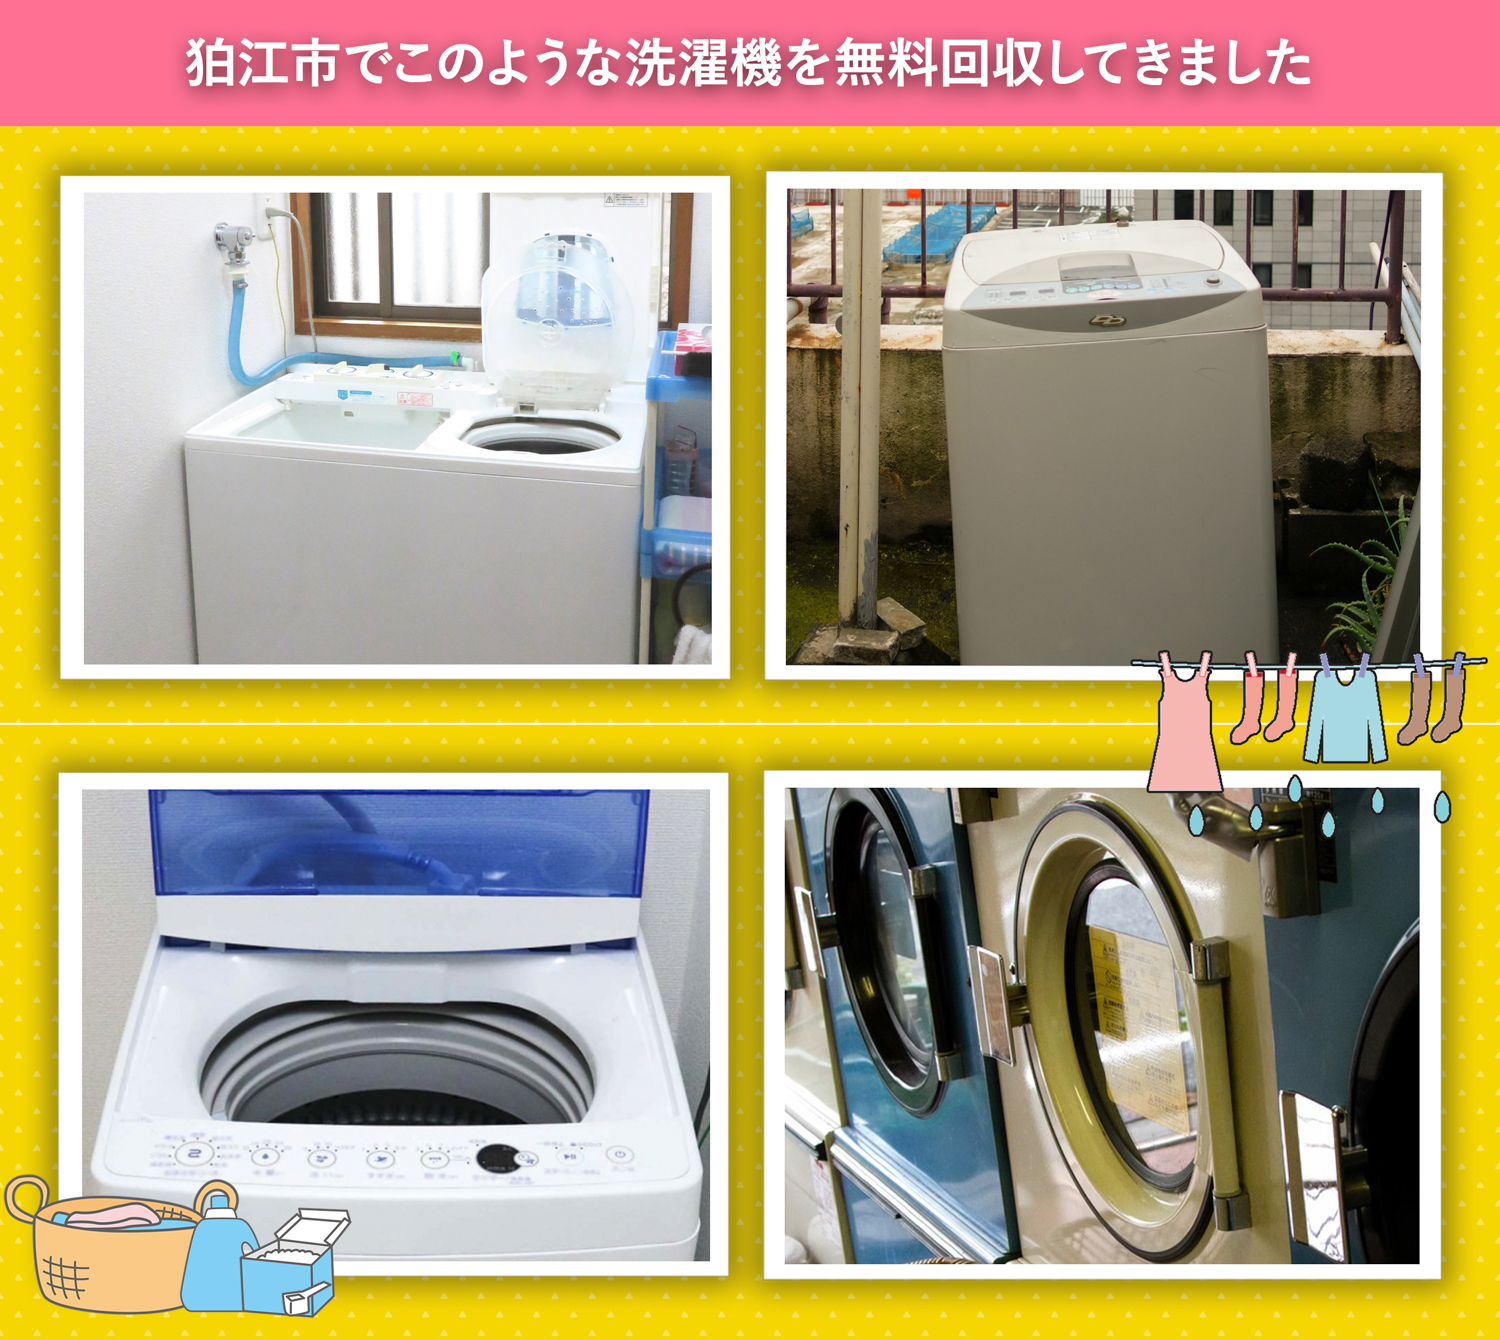 狛江市でこのような洗濯機を無料回収してきました。